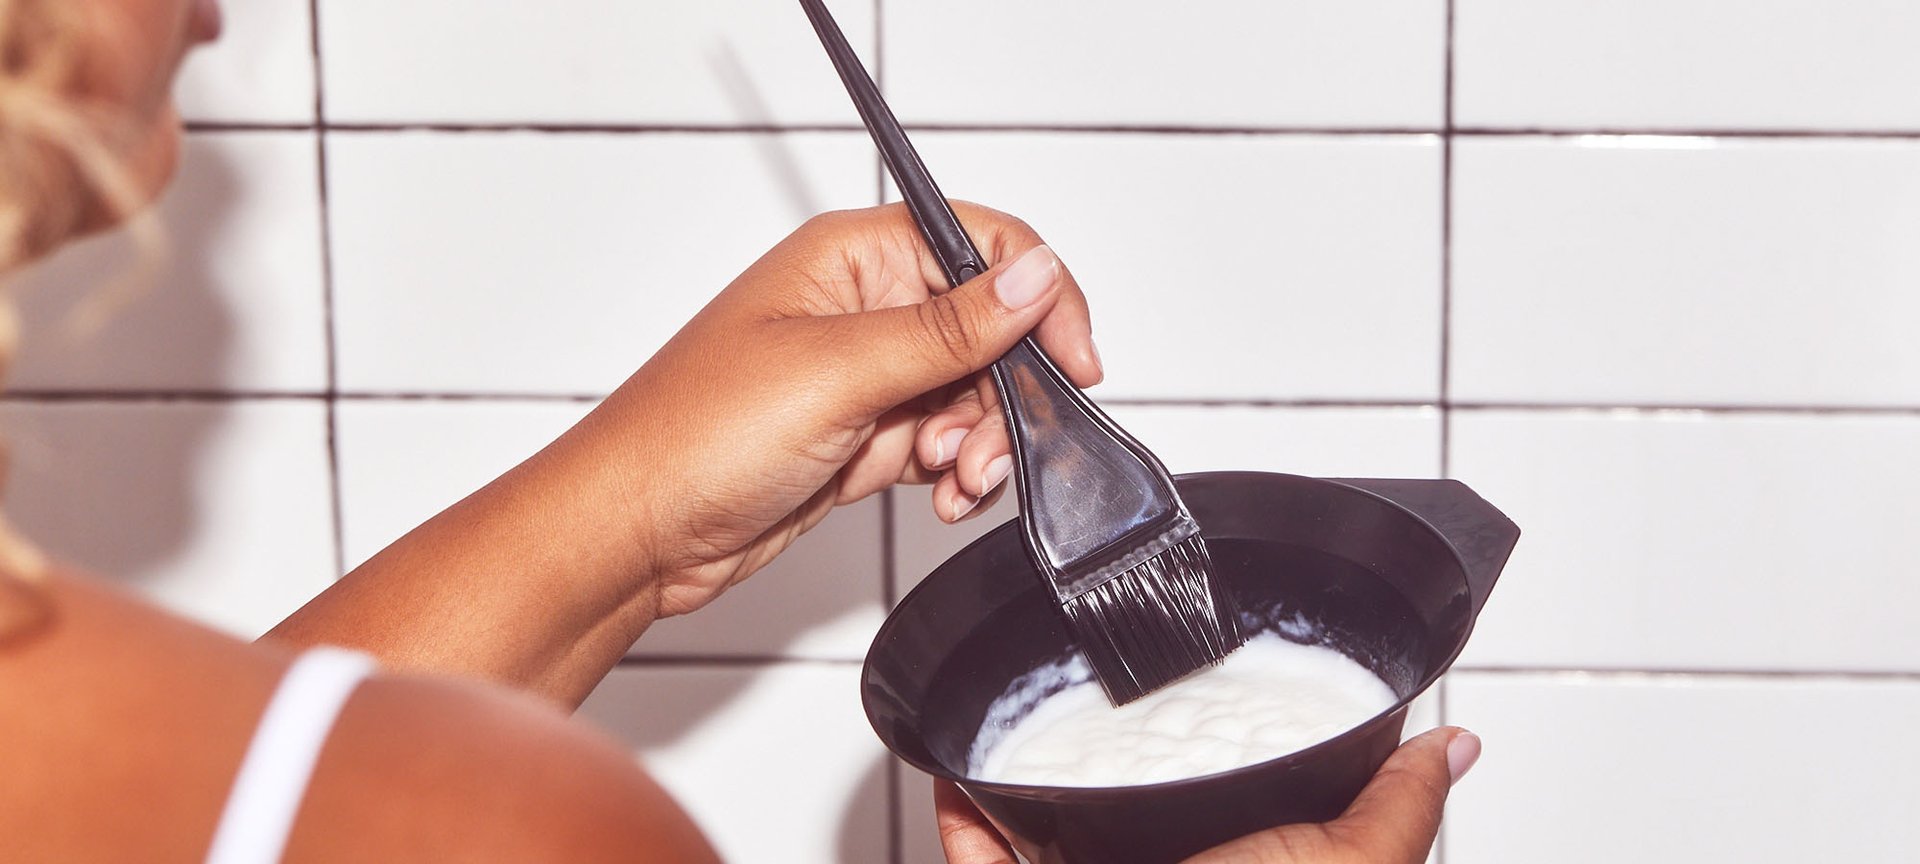 How To Bleach Hair At Home